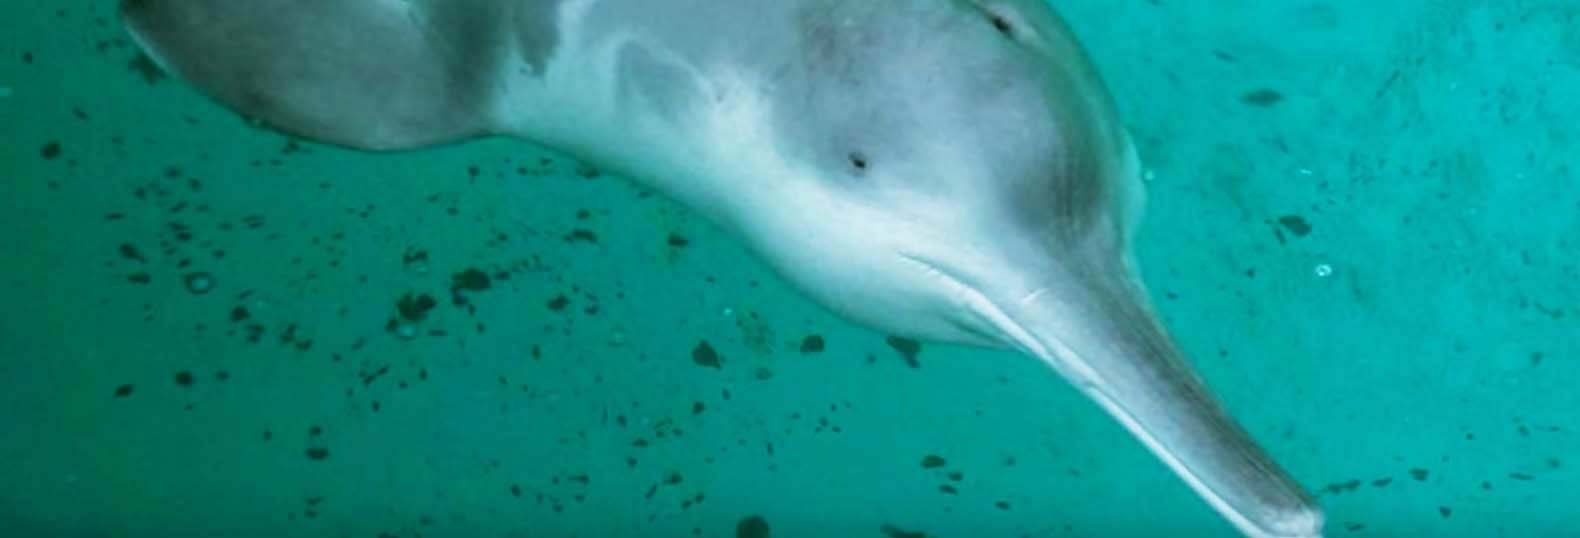 Fotos del delfín fluvial chino